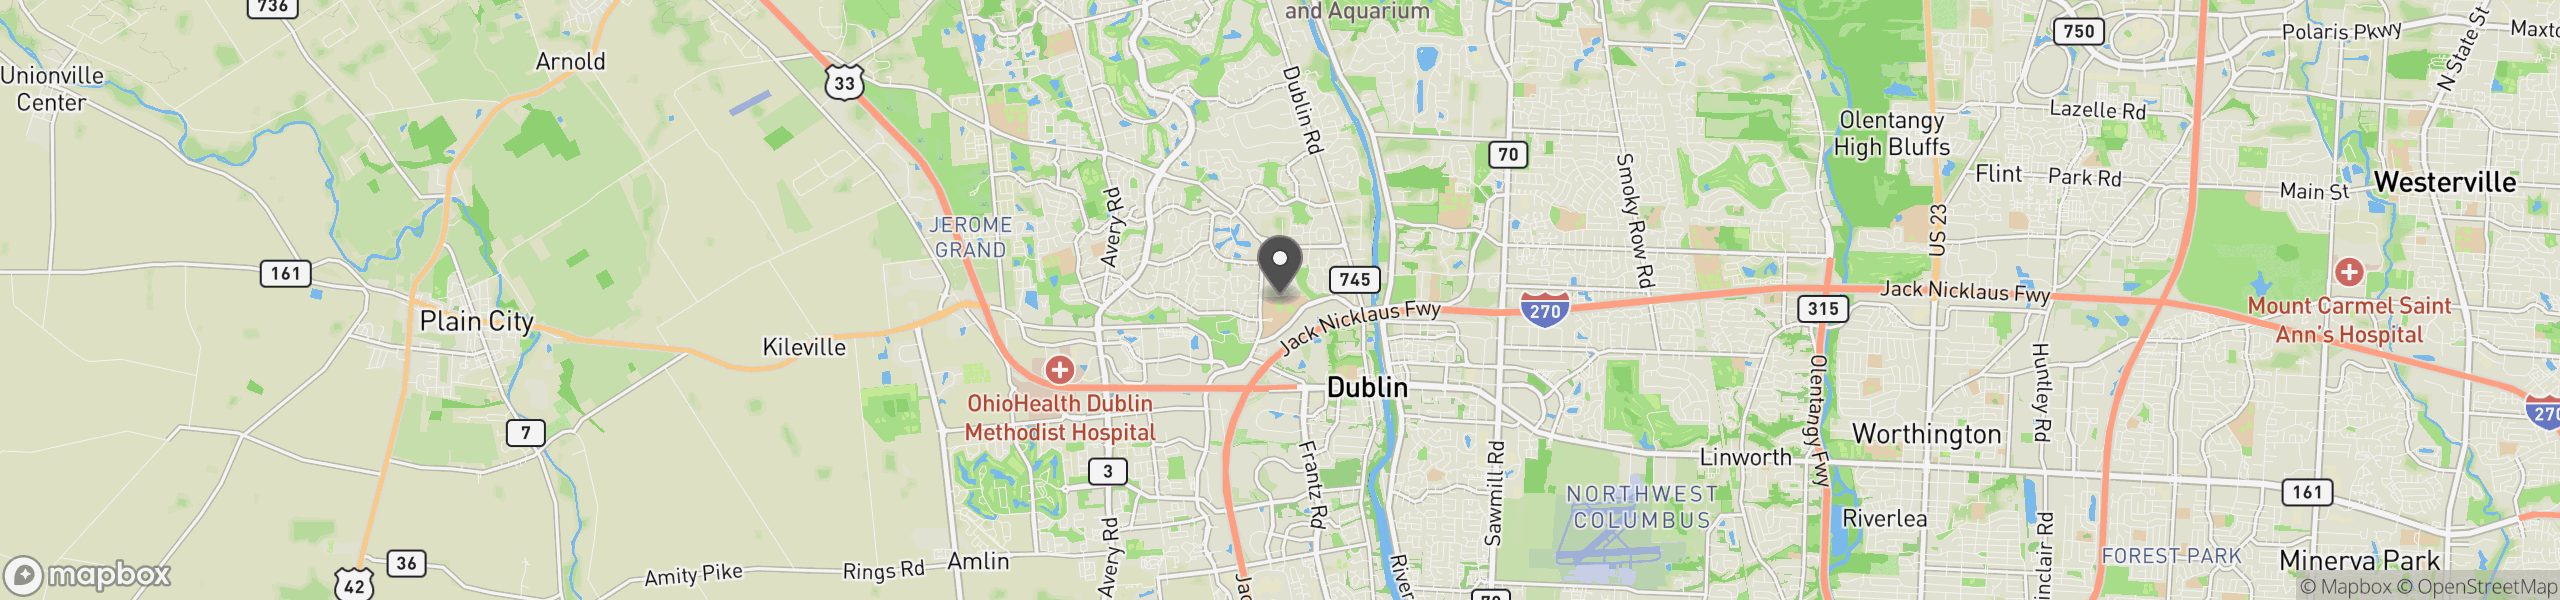 Dublin, OH 43017